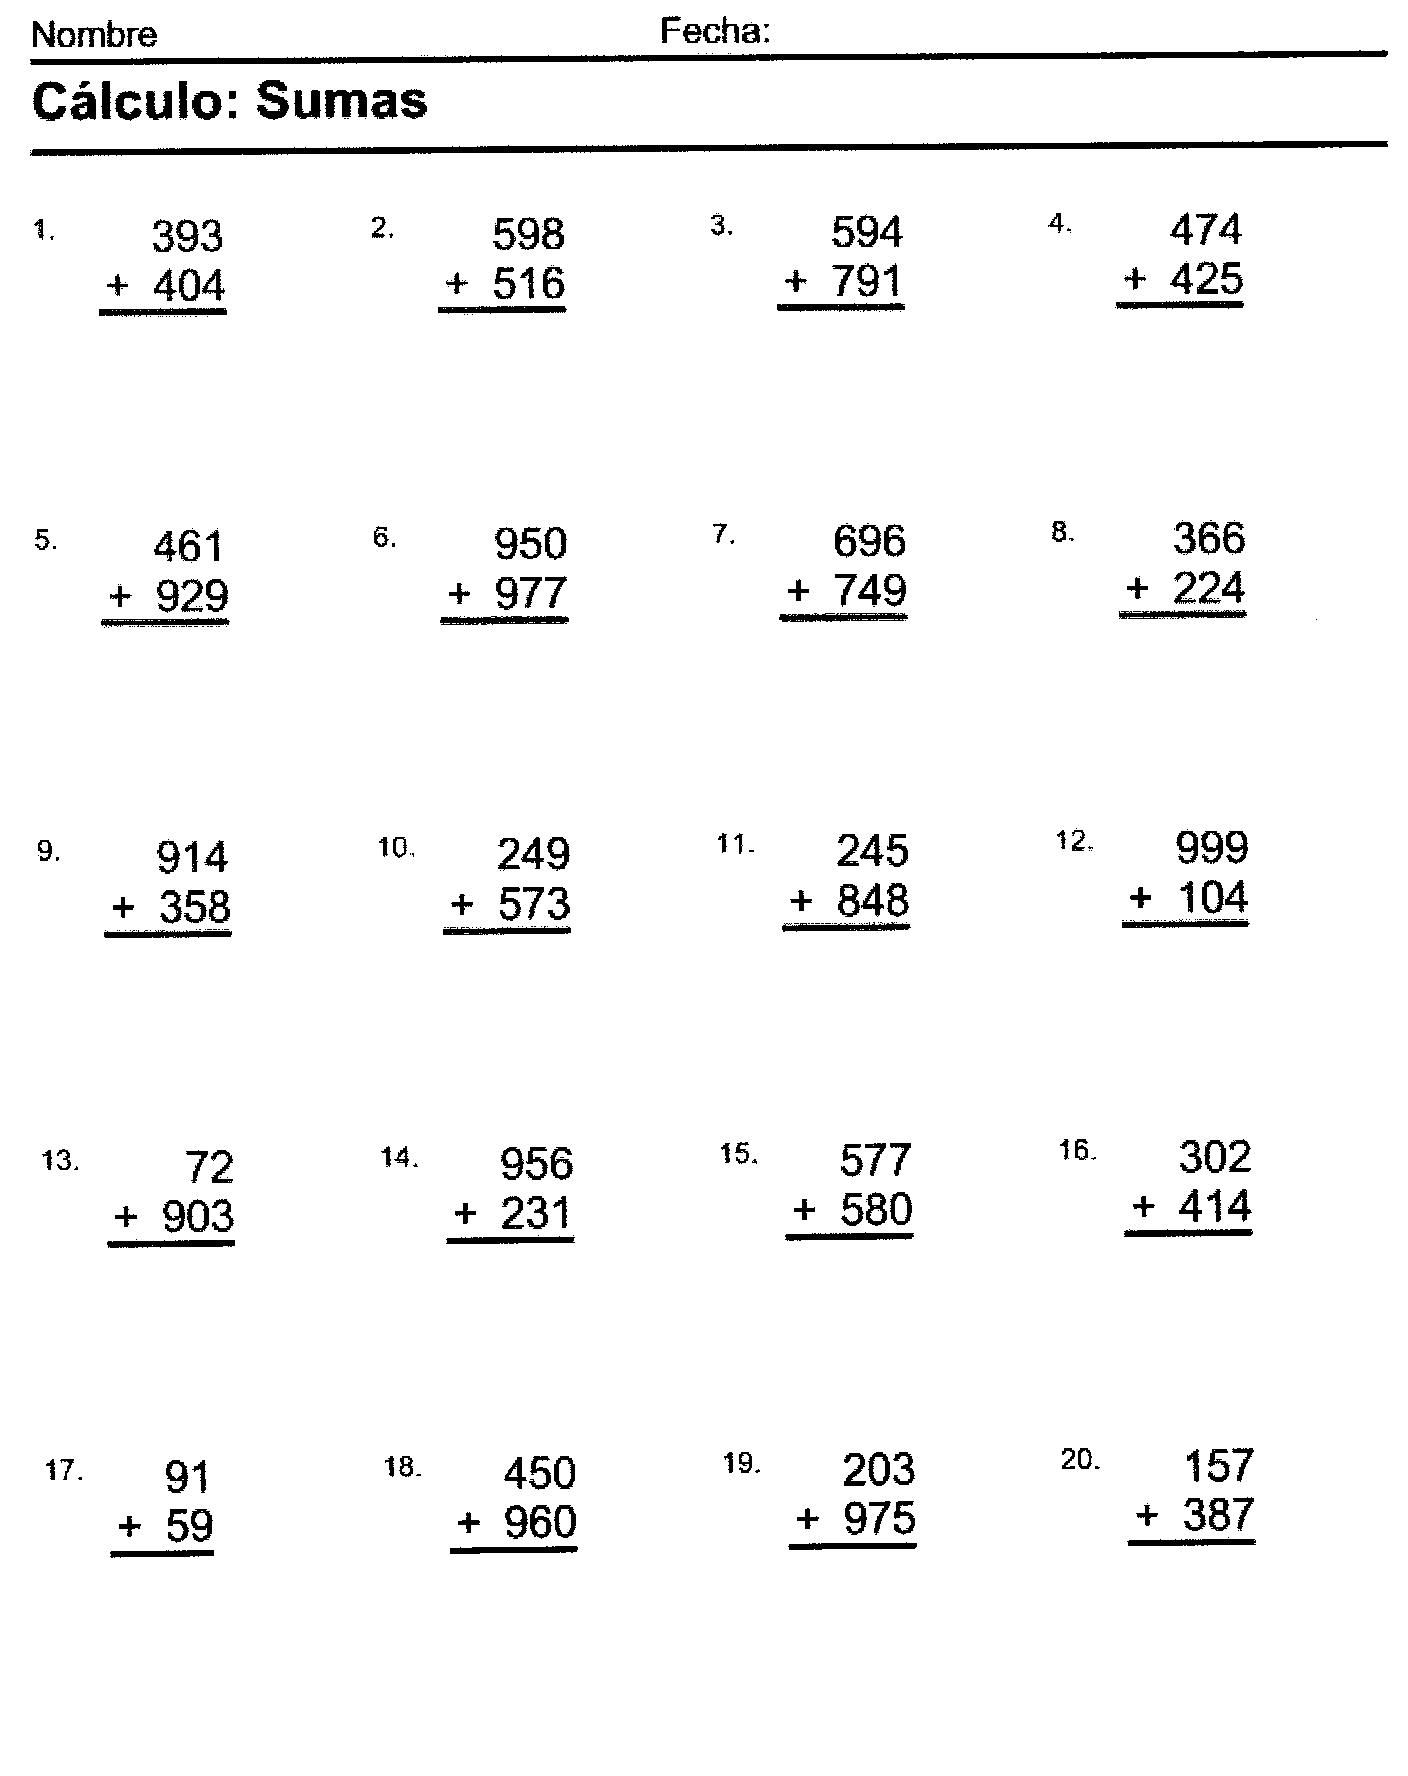 suma resta multiplicacion y division de vectores pdf